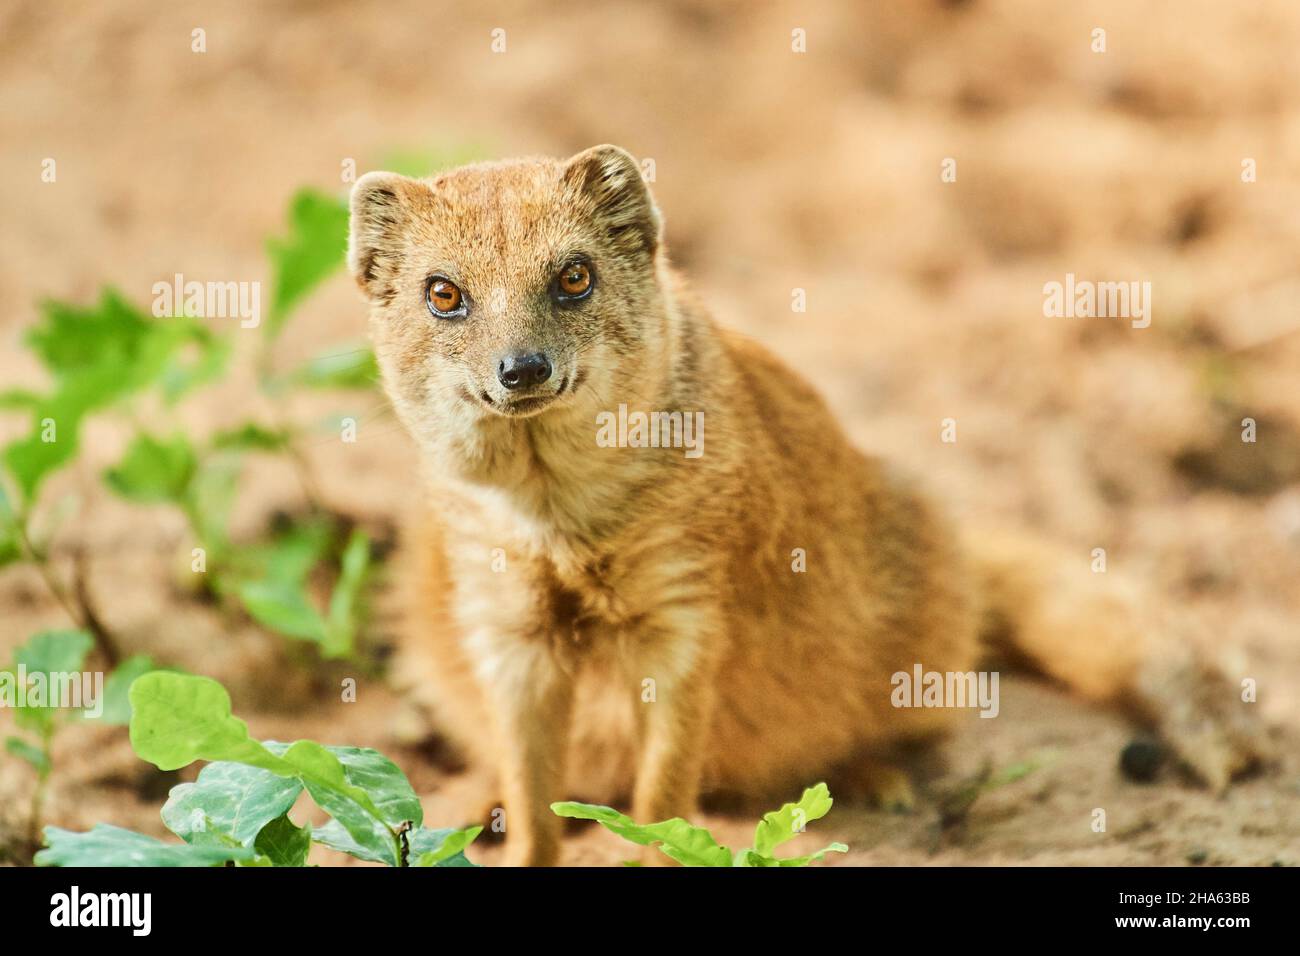 renard monoie (cynictis penicillata), fond sablonneux, frontal, assis, regardant la caméra Banque D'Images